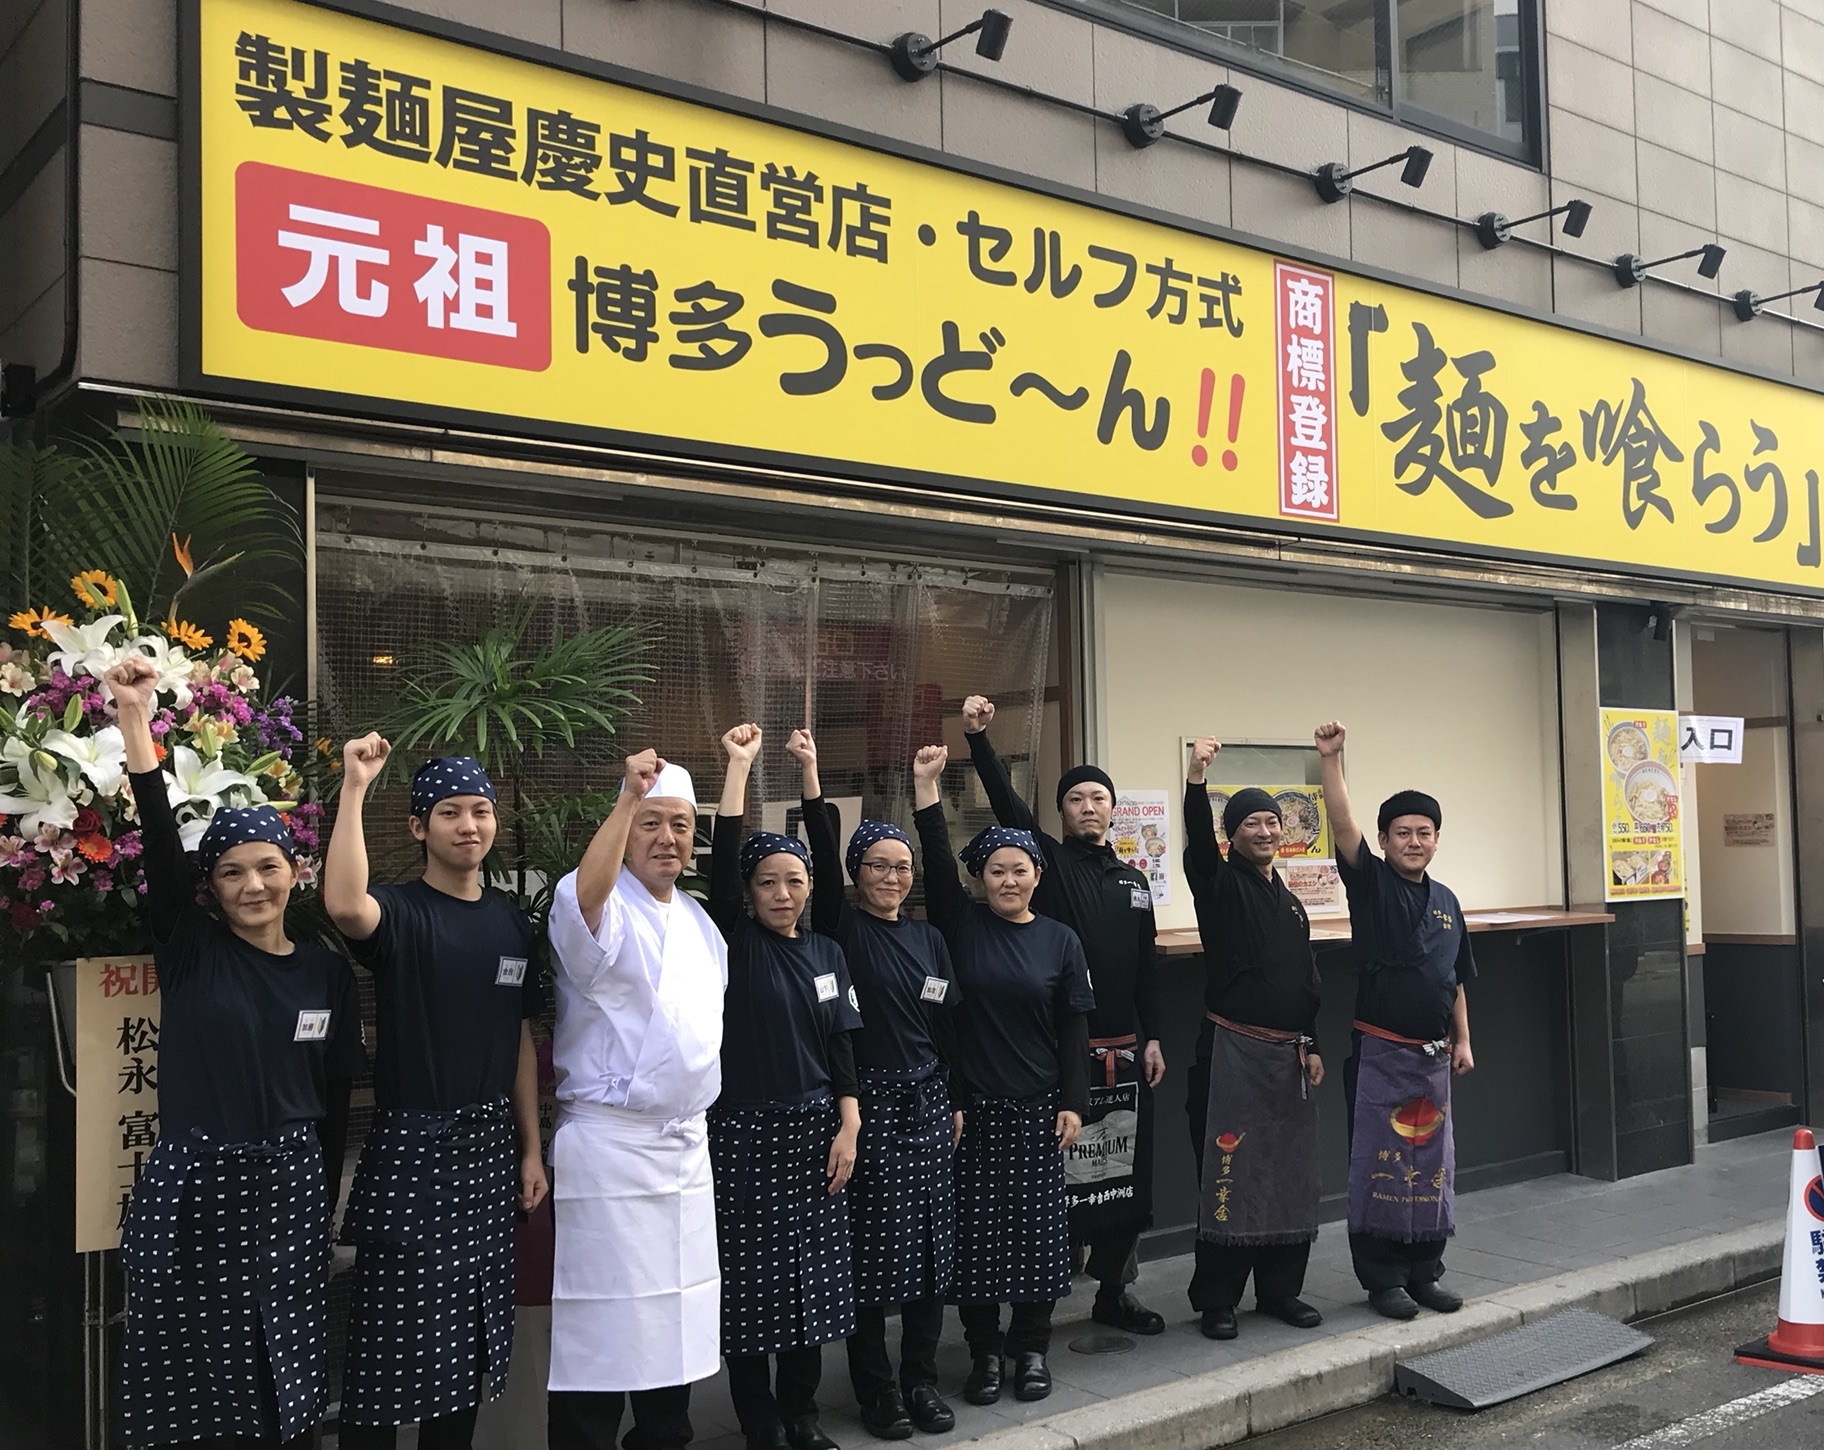 元祖博多うっど〜ん「麺を喰らう」麺ショップ本店グランドオープン!!